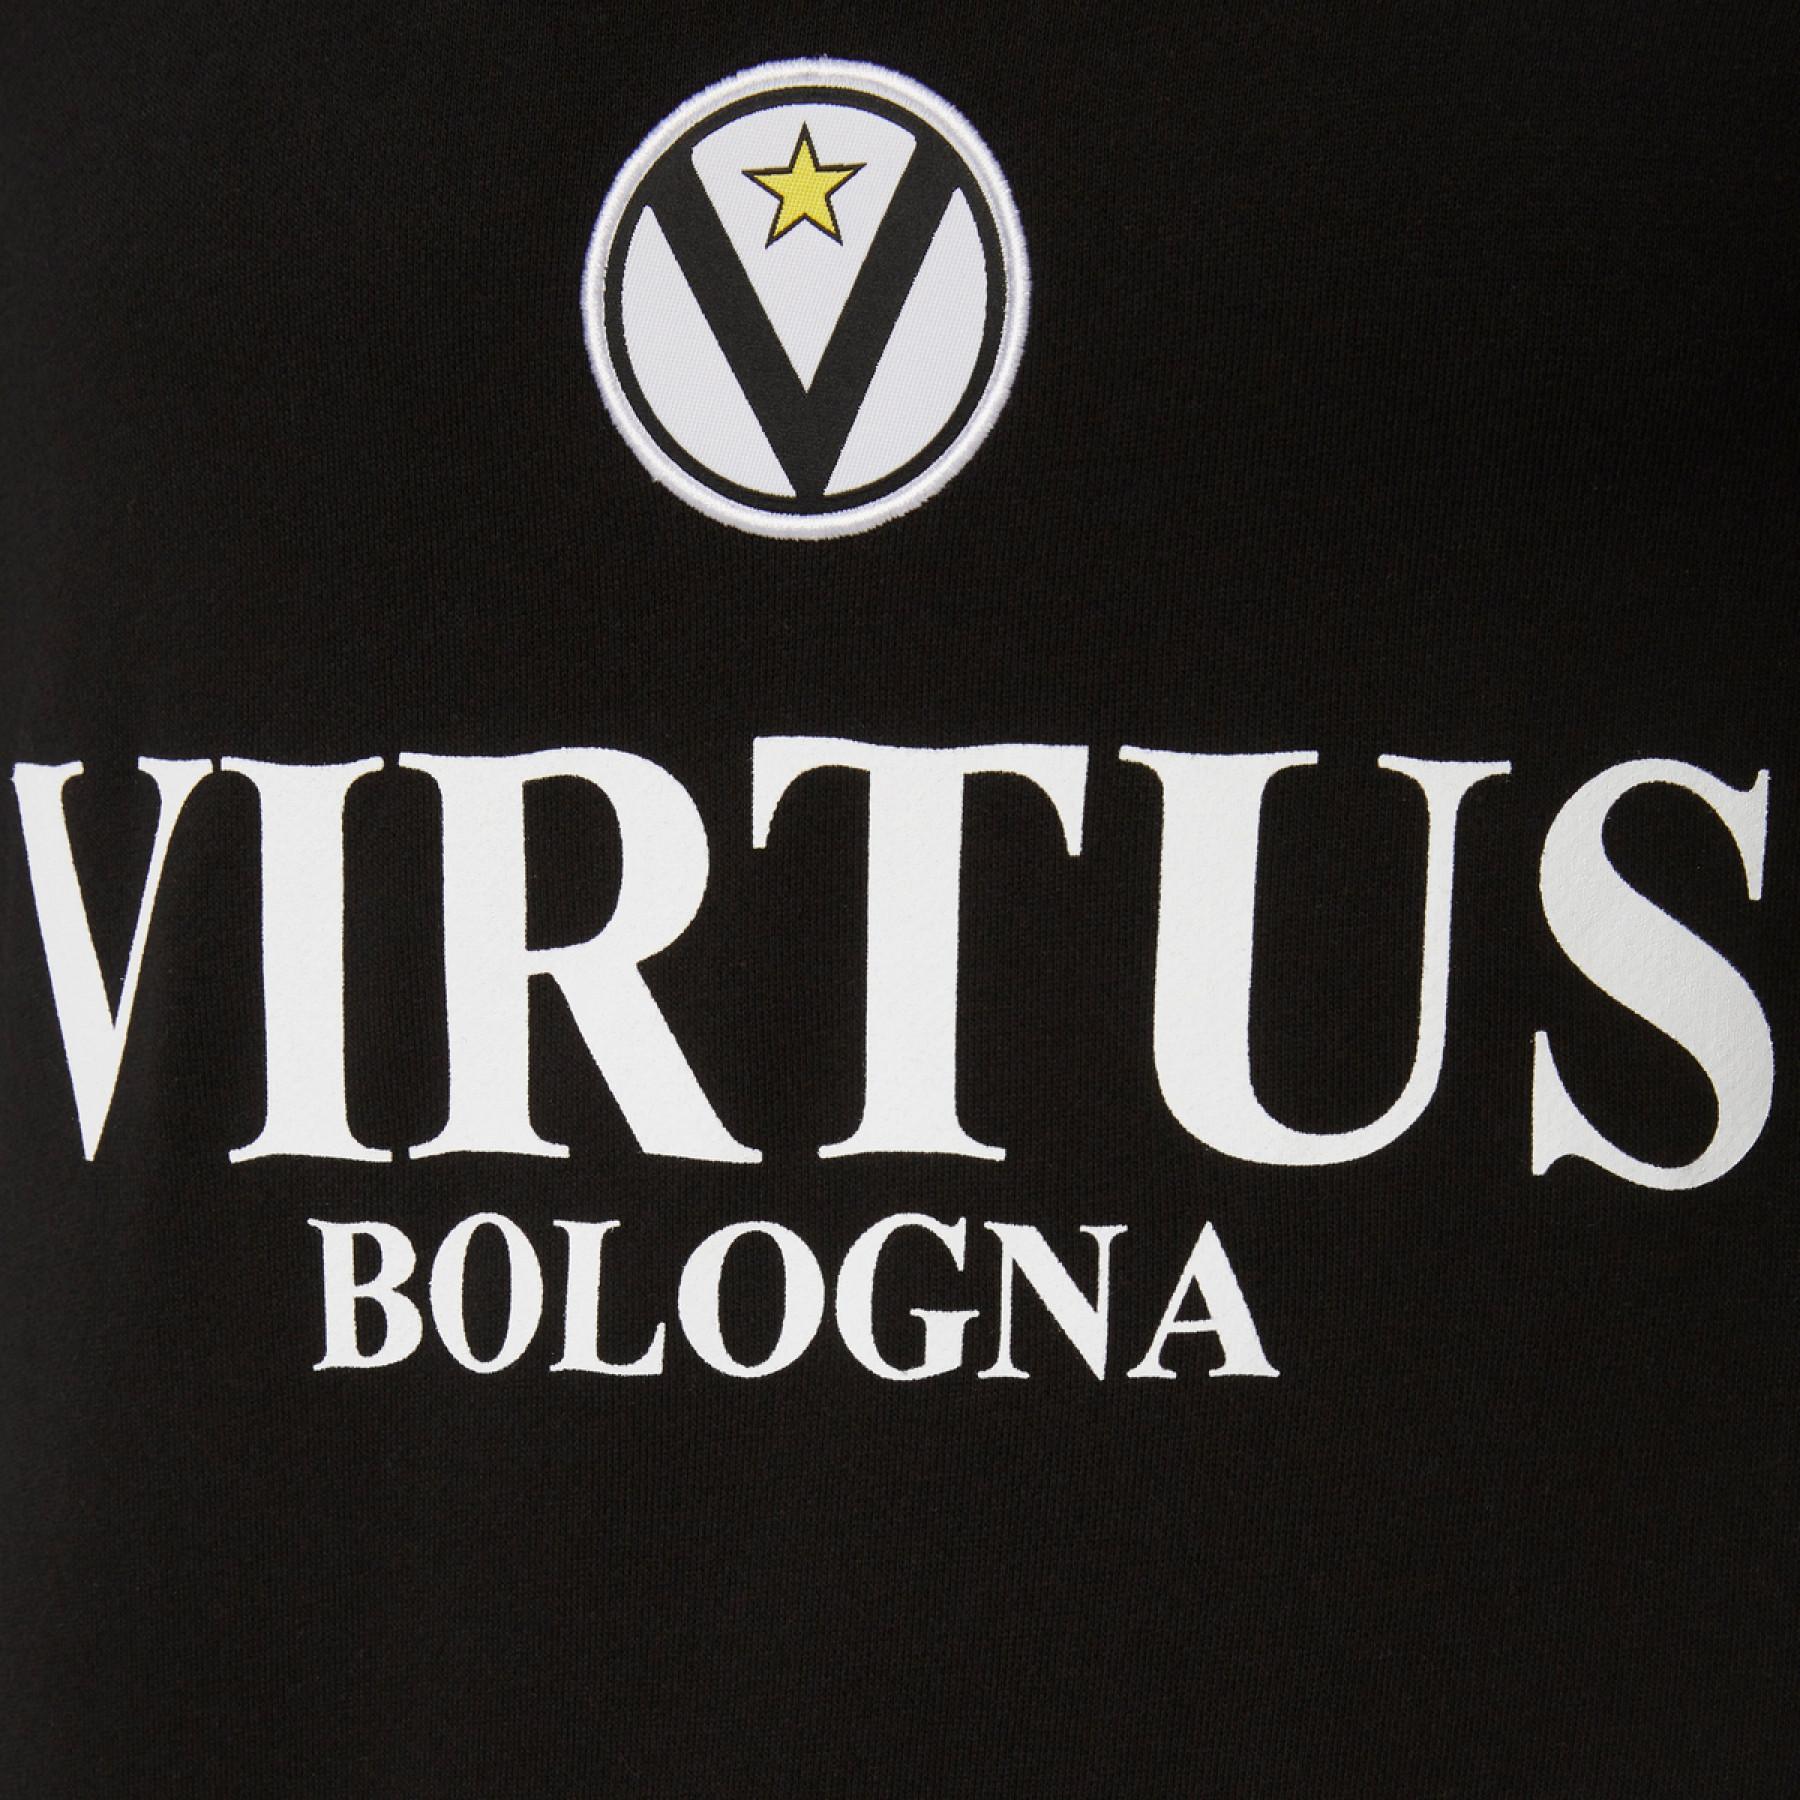 Pullover Virtus Bologne 2019/20